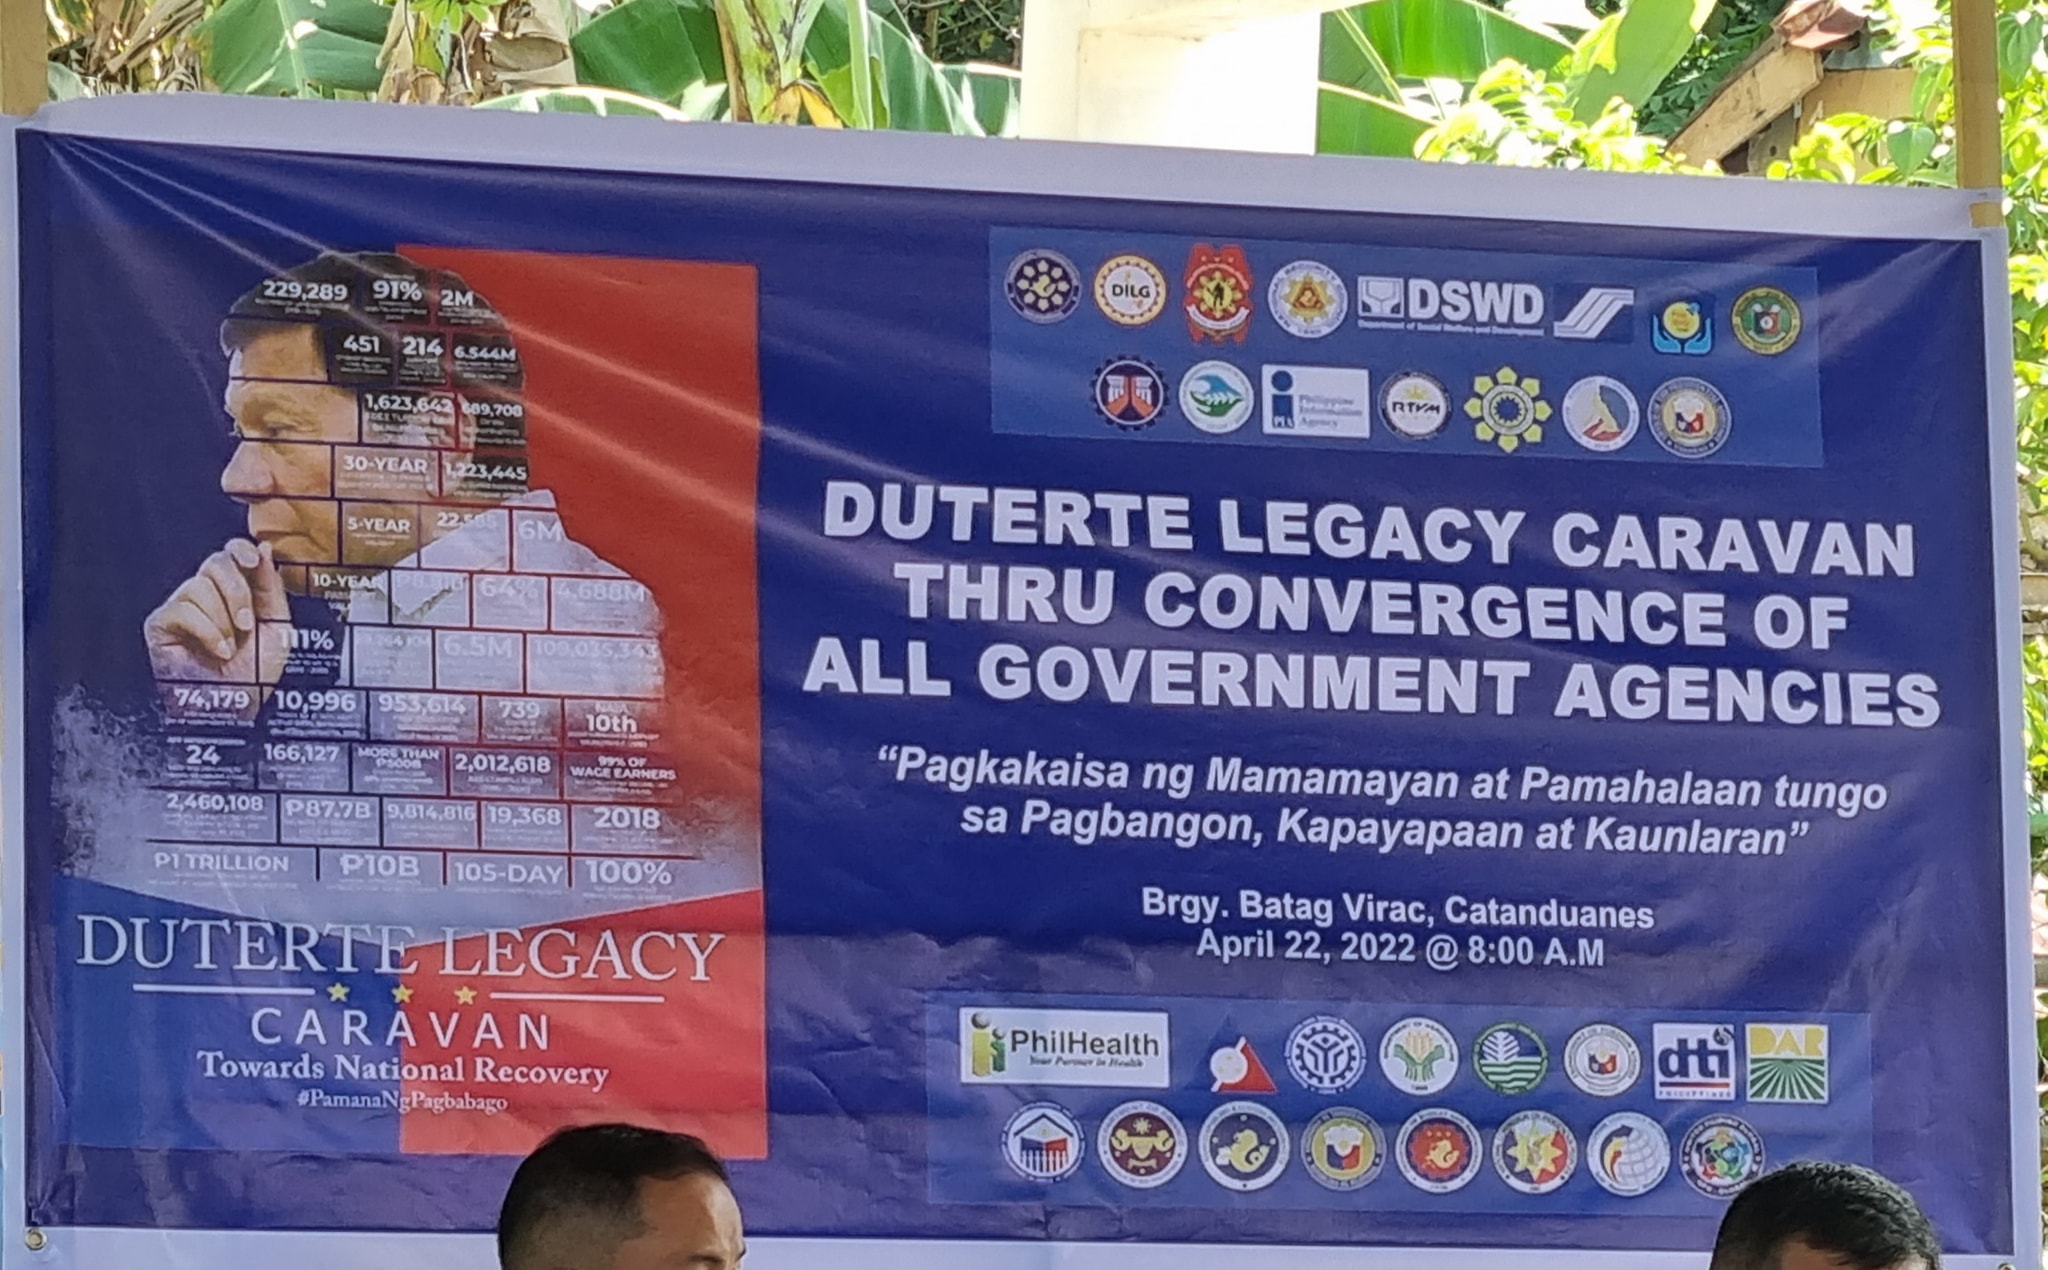 PIA joins PDU30 legacy caravan in Catanduanes